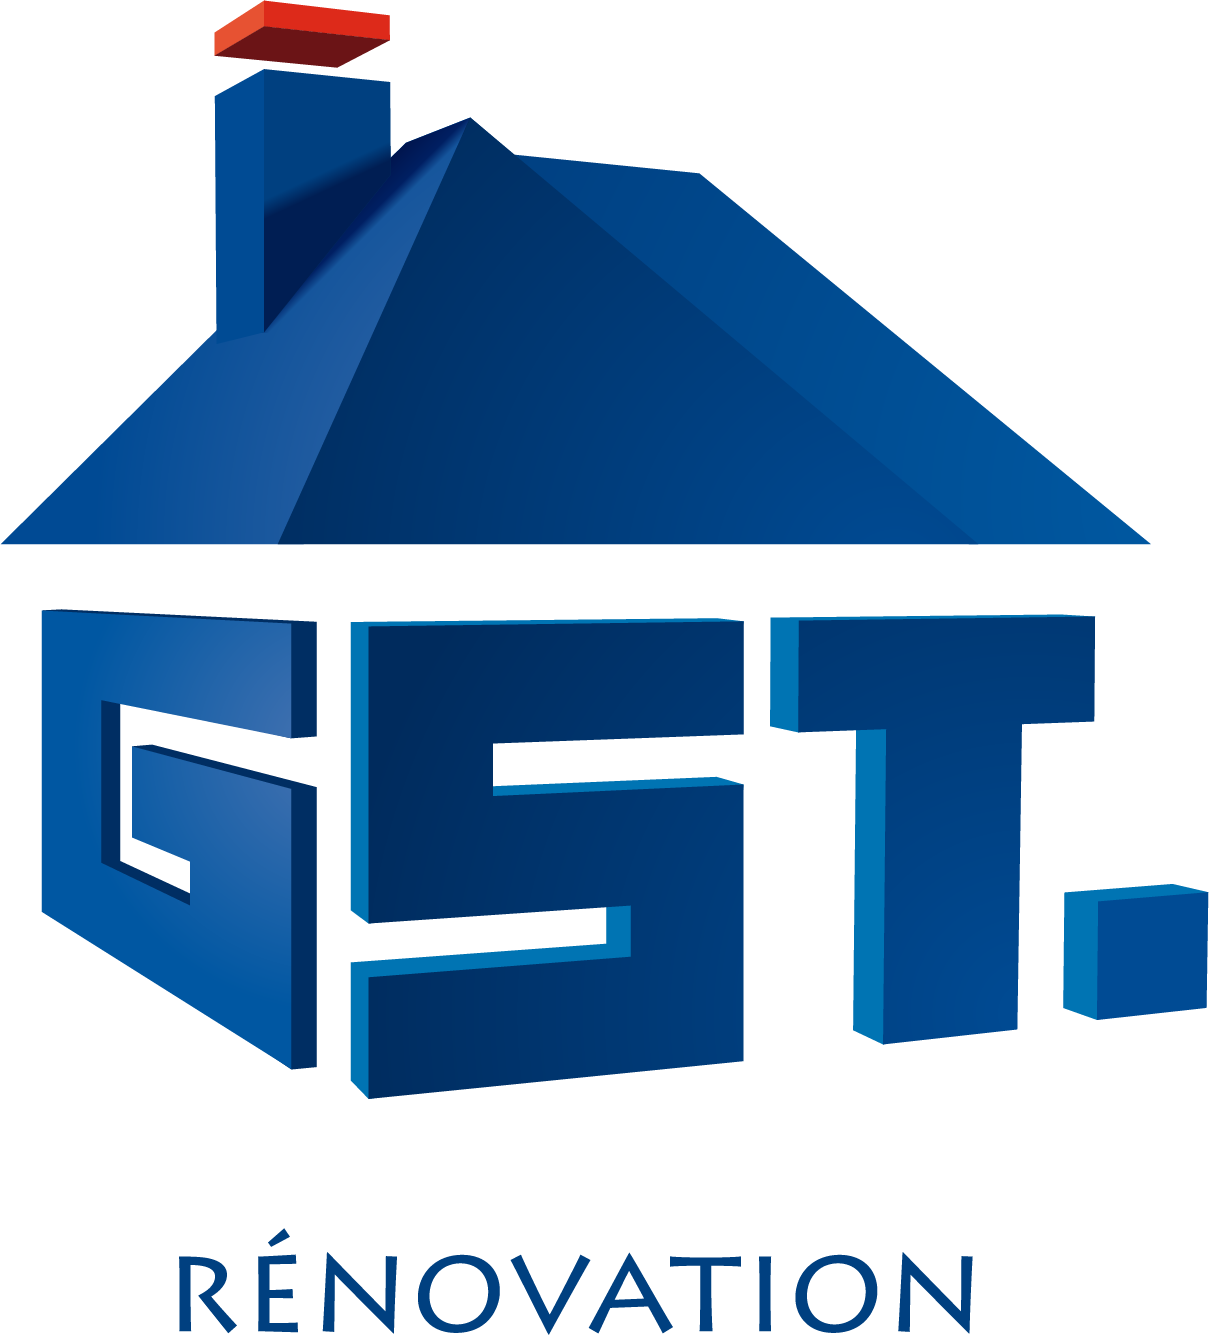 GST Rénovation